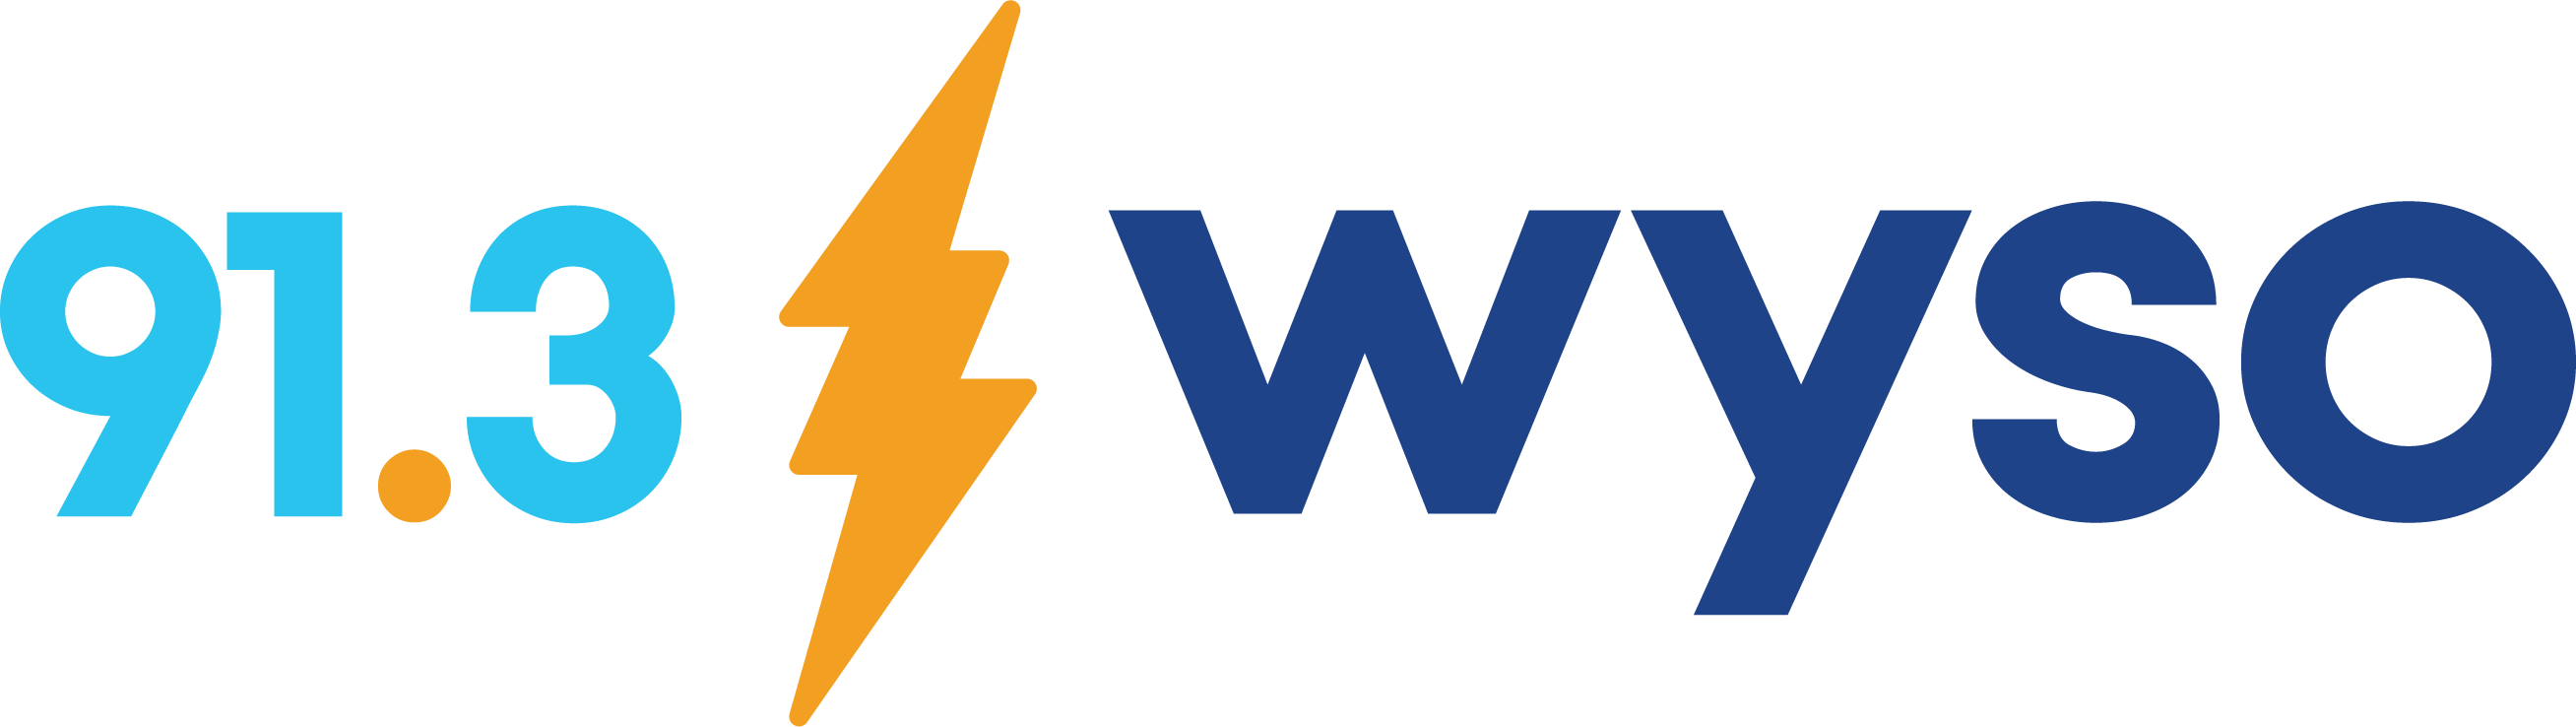 WYSO-FM